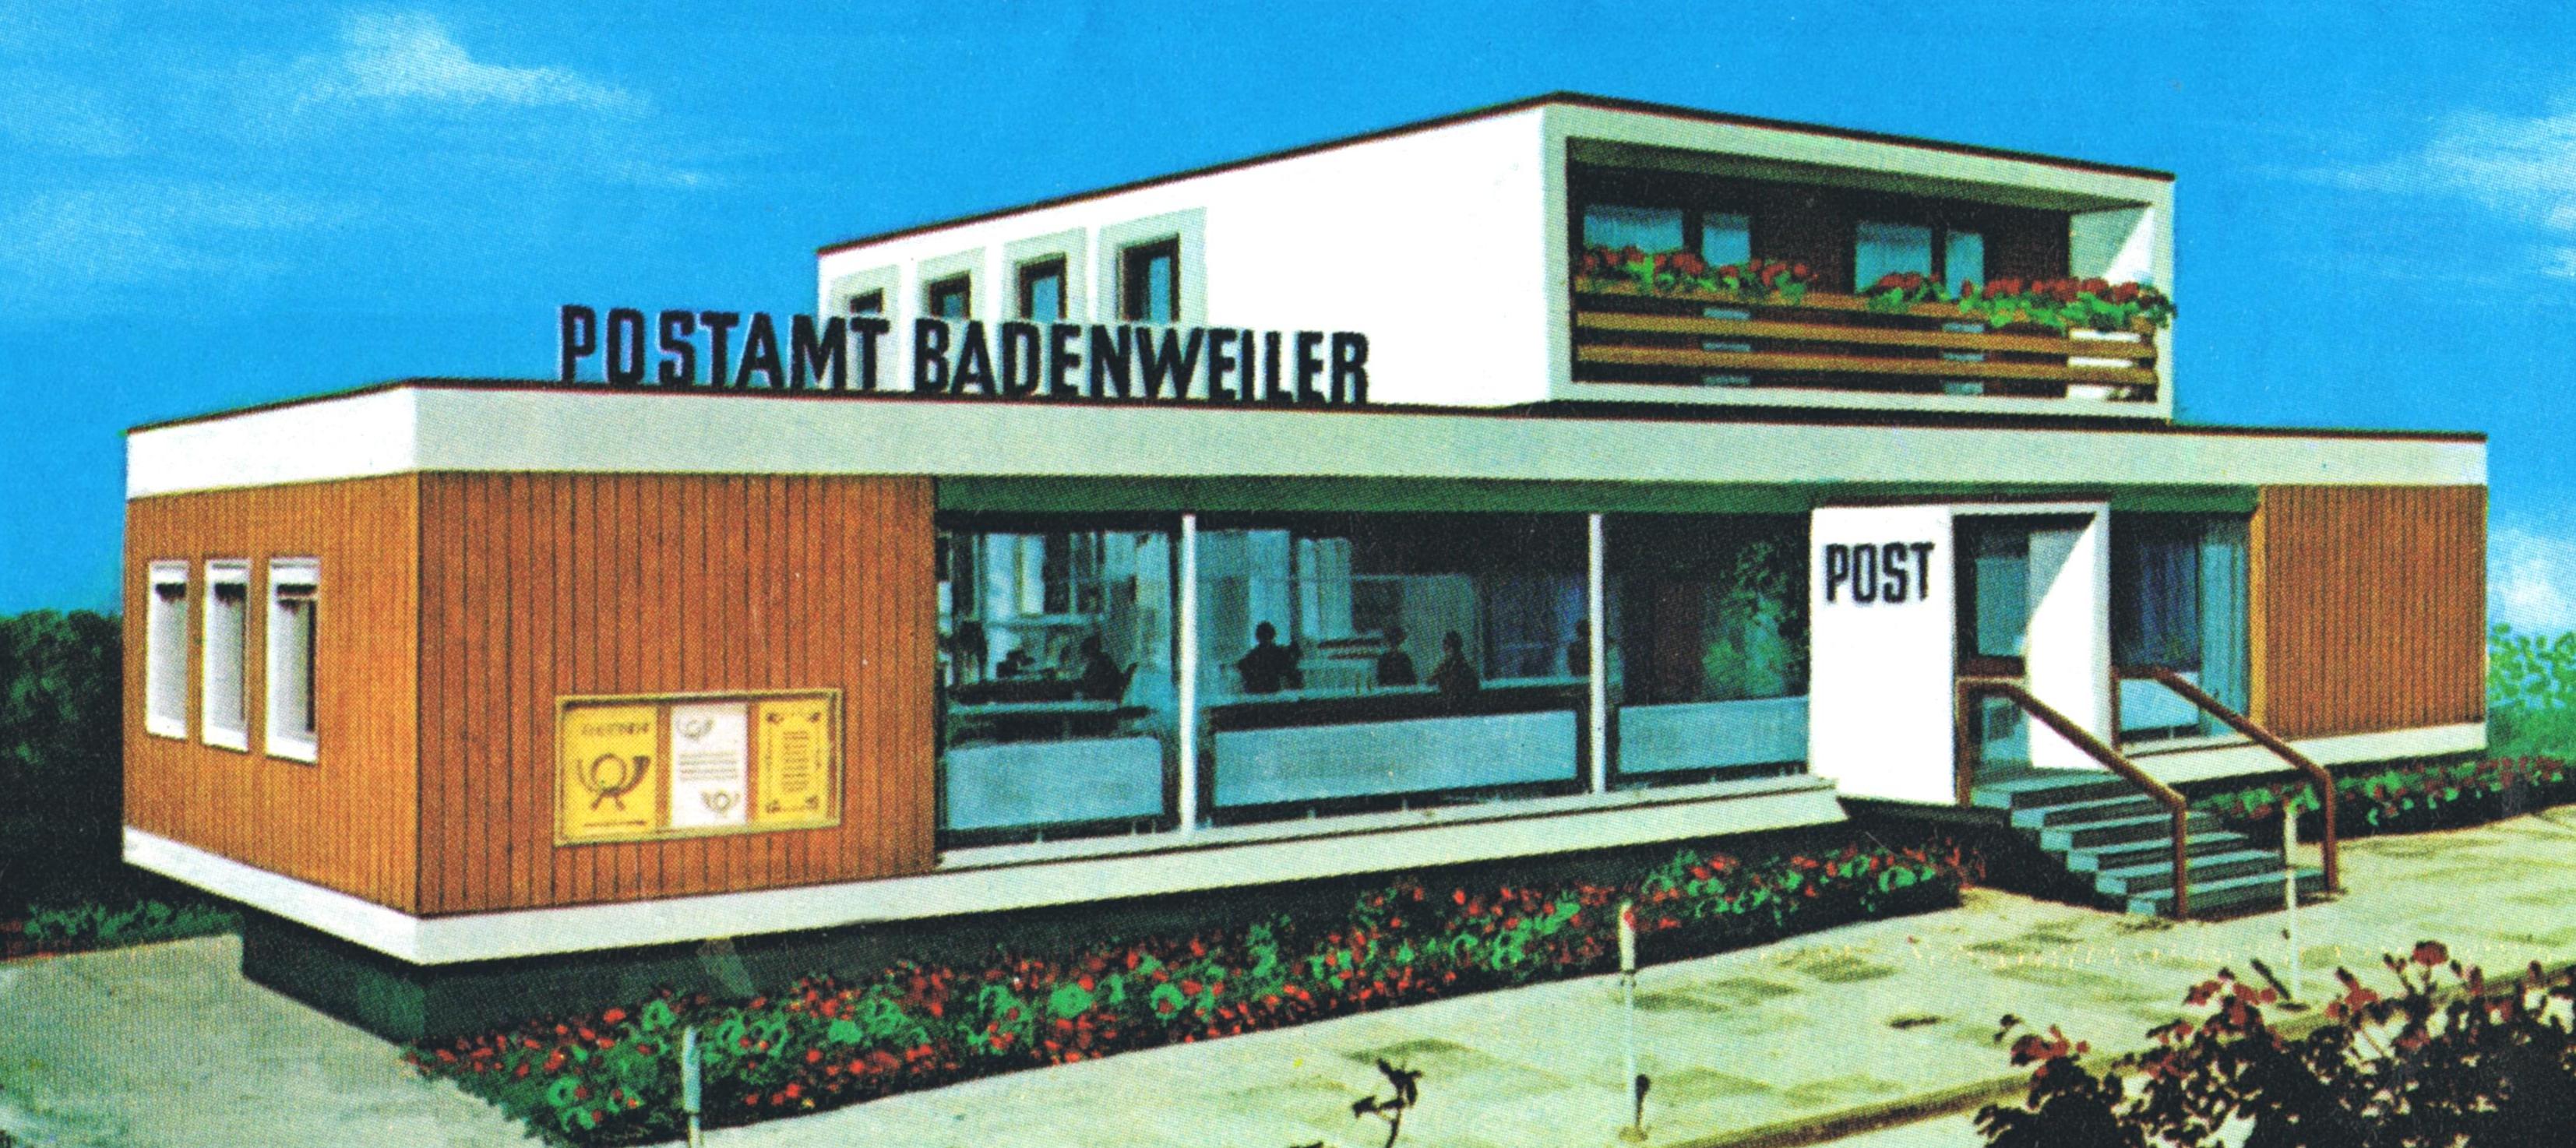 Kibri-Bausatz "Postamt Badenweiler" (Bild: historischer Karton)